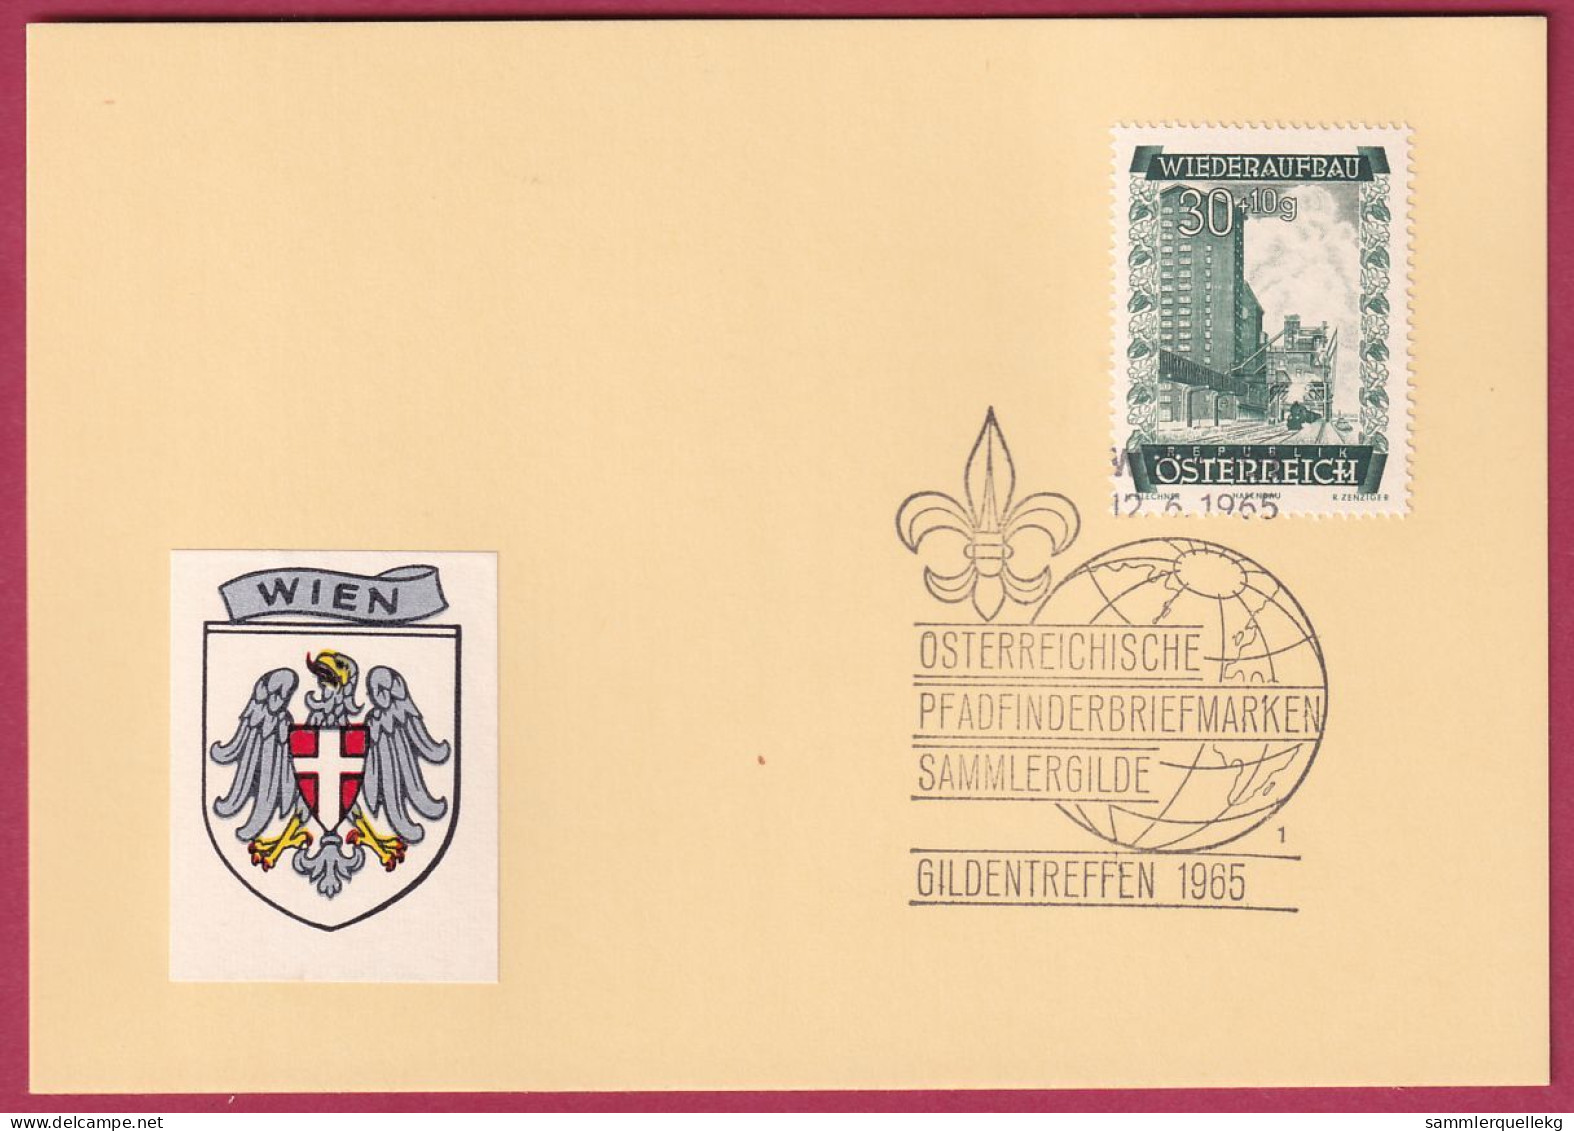 Österreich MNr. 860 Sonderstempel 12. 6. 1965 Österreich Pfadfinderbriefmarken Sammlergilde 1965 - Brieven En Documenten